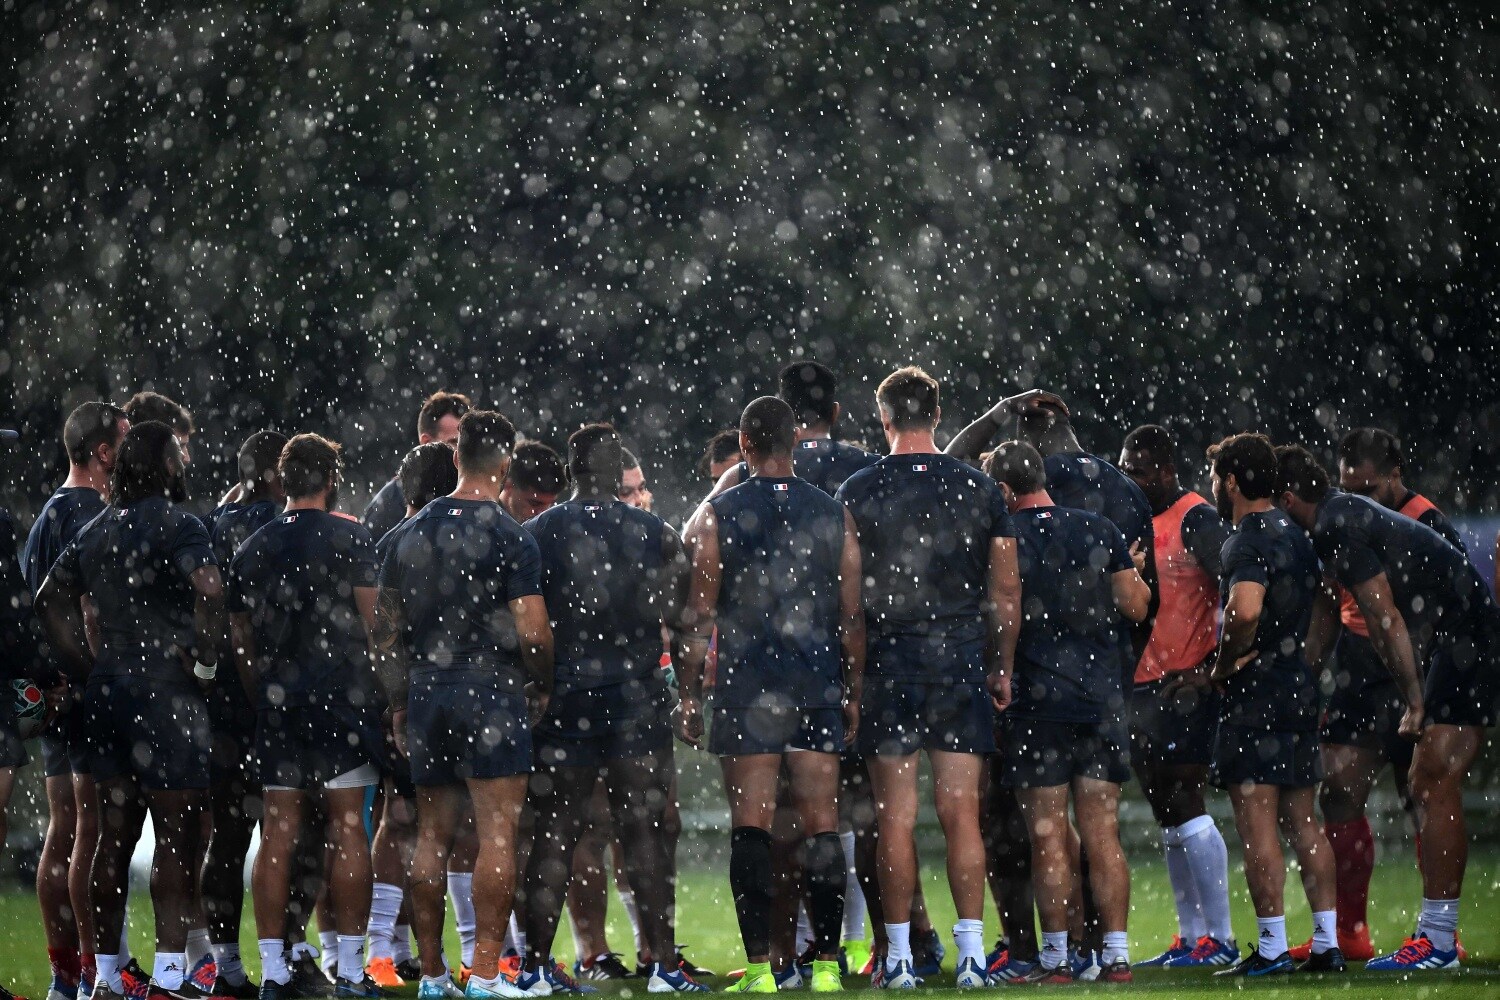 Los jugadores de Francia asisten a una sesión de entrenamiento en el Parque Fuji Hokuroku en Fujiyoshida, donde el equipo francés entrenará antes de la Copa Mundial de Rugby de Japón 2019